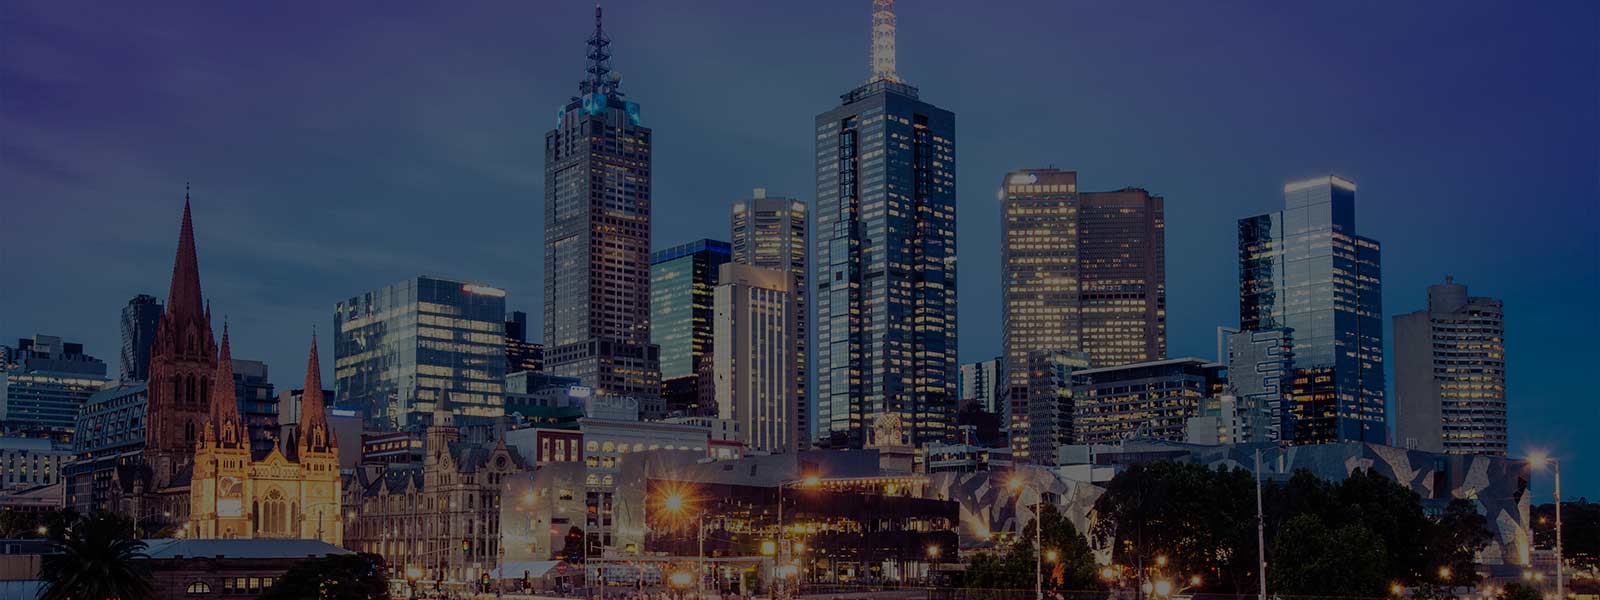 Melbourne city skyscraper night view